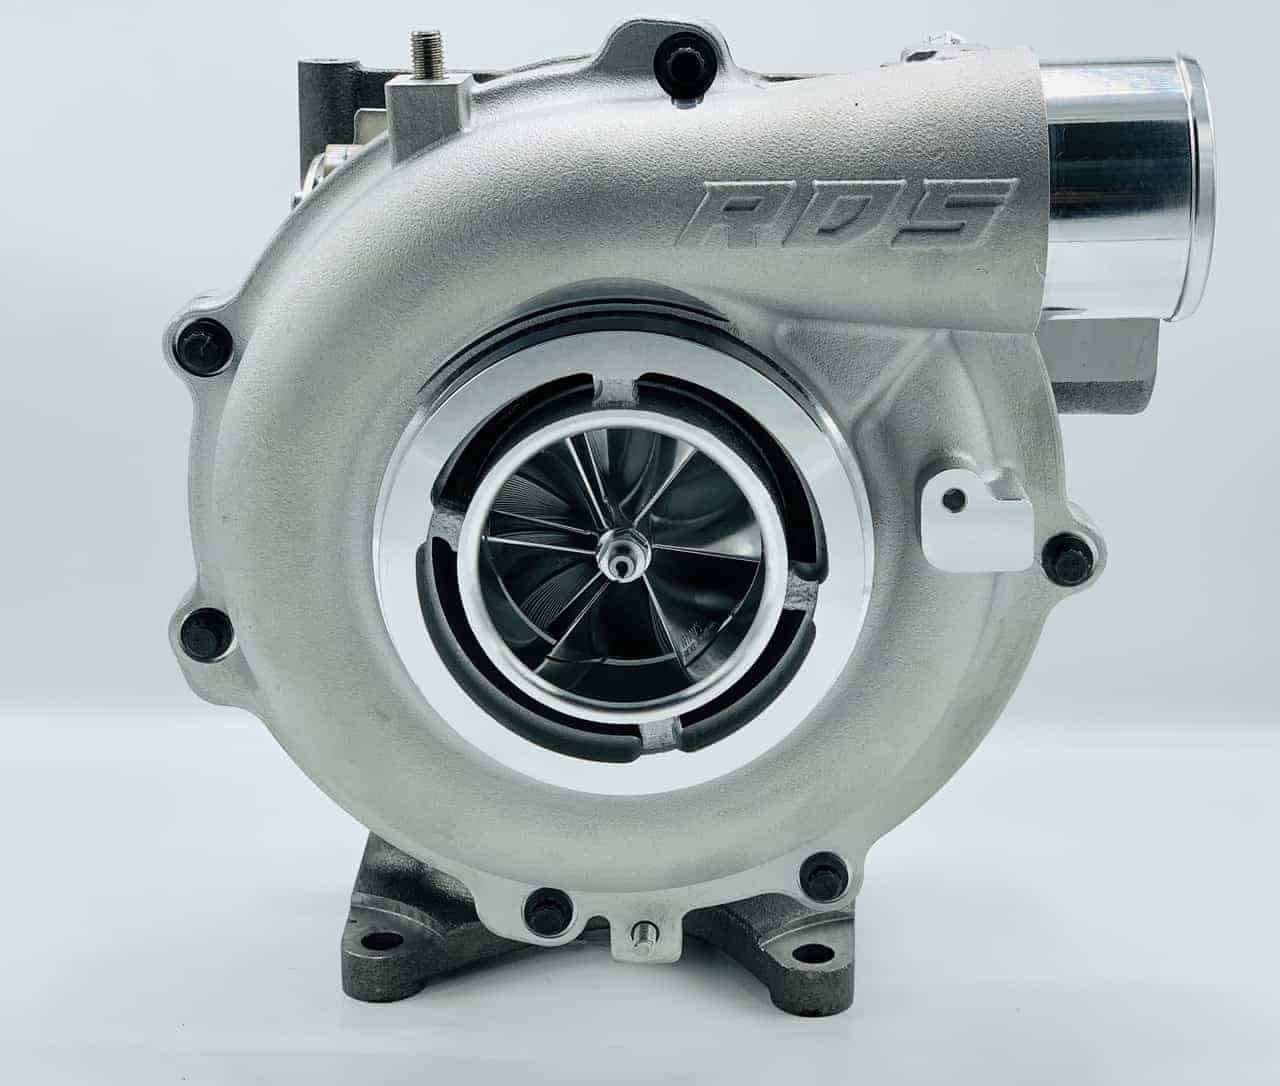 LML 66mm turbo